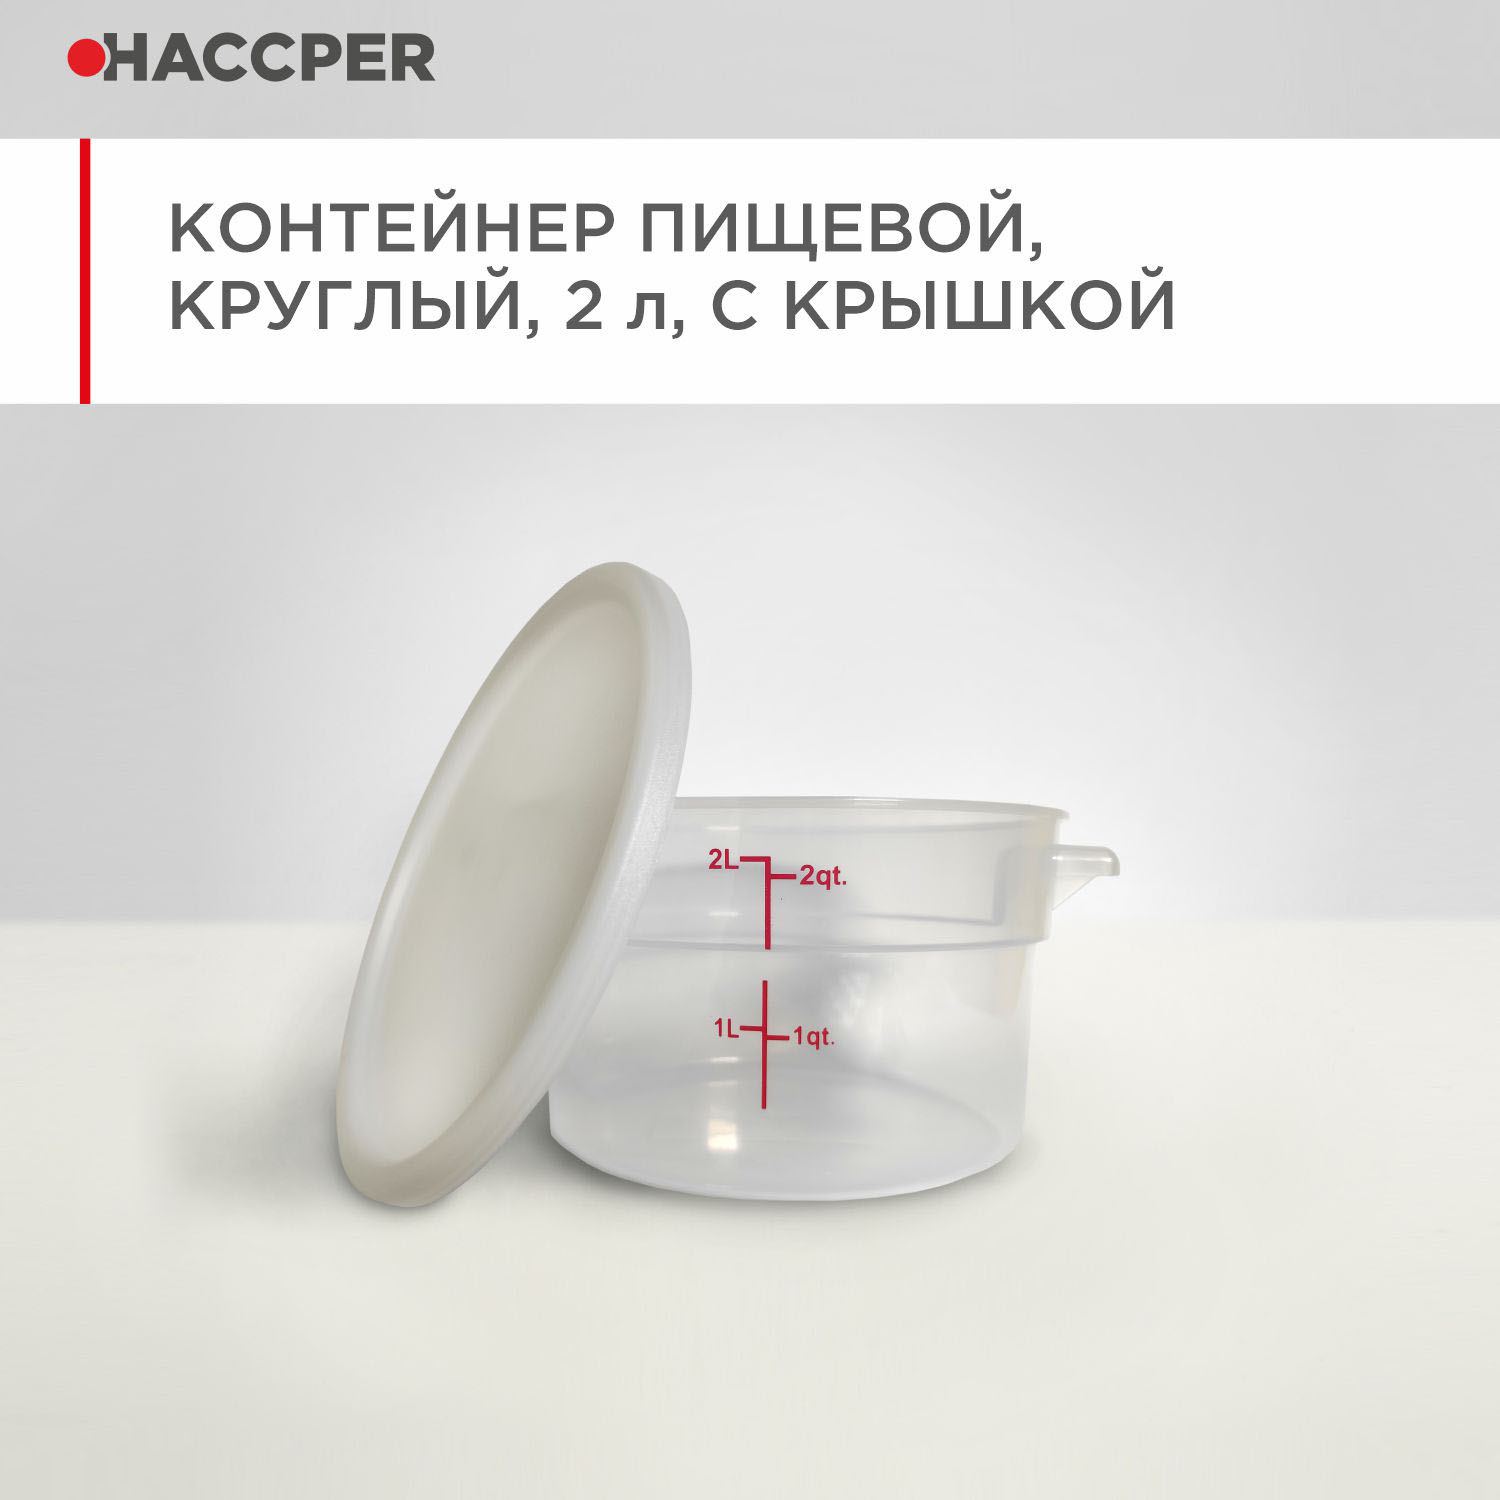 Контейнер пищевой HACCPER круглый, 2 л, с крышкой